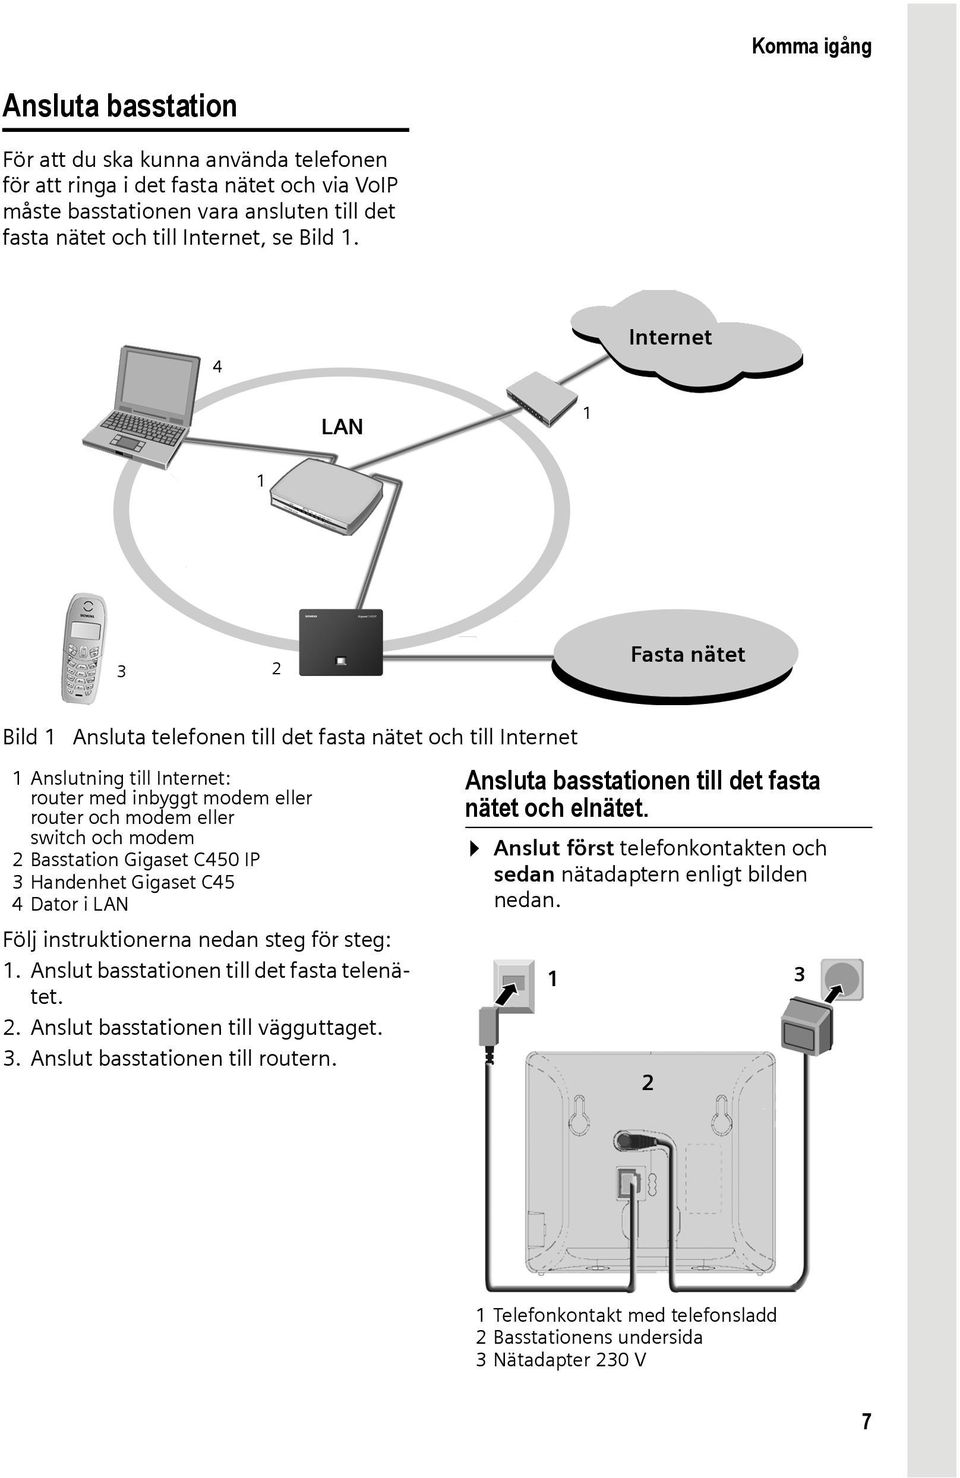 Basstation Gigaset C450 IP 3 Handenhet Gigaset C45 4 Dator i LAN Följ instruktionerna nedan steg för steg: 1. Anslut basstationen till det fasta telenätet. 2. Anslut basstationen till vägguttaget. 3. Anslut basstationen till routern.